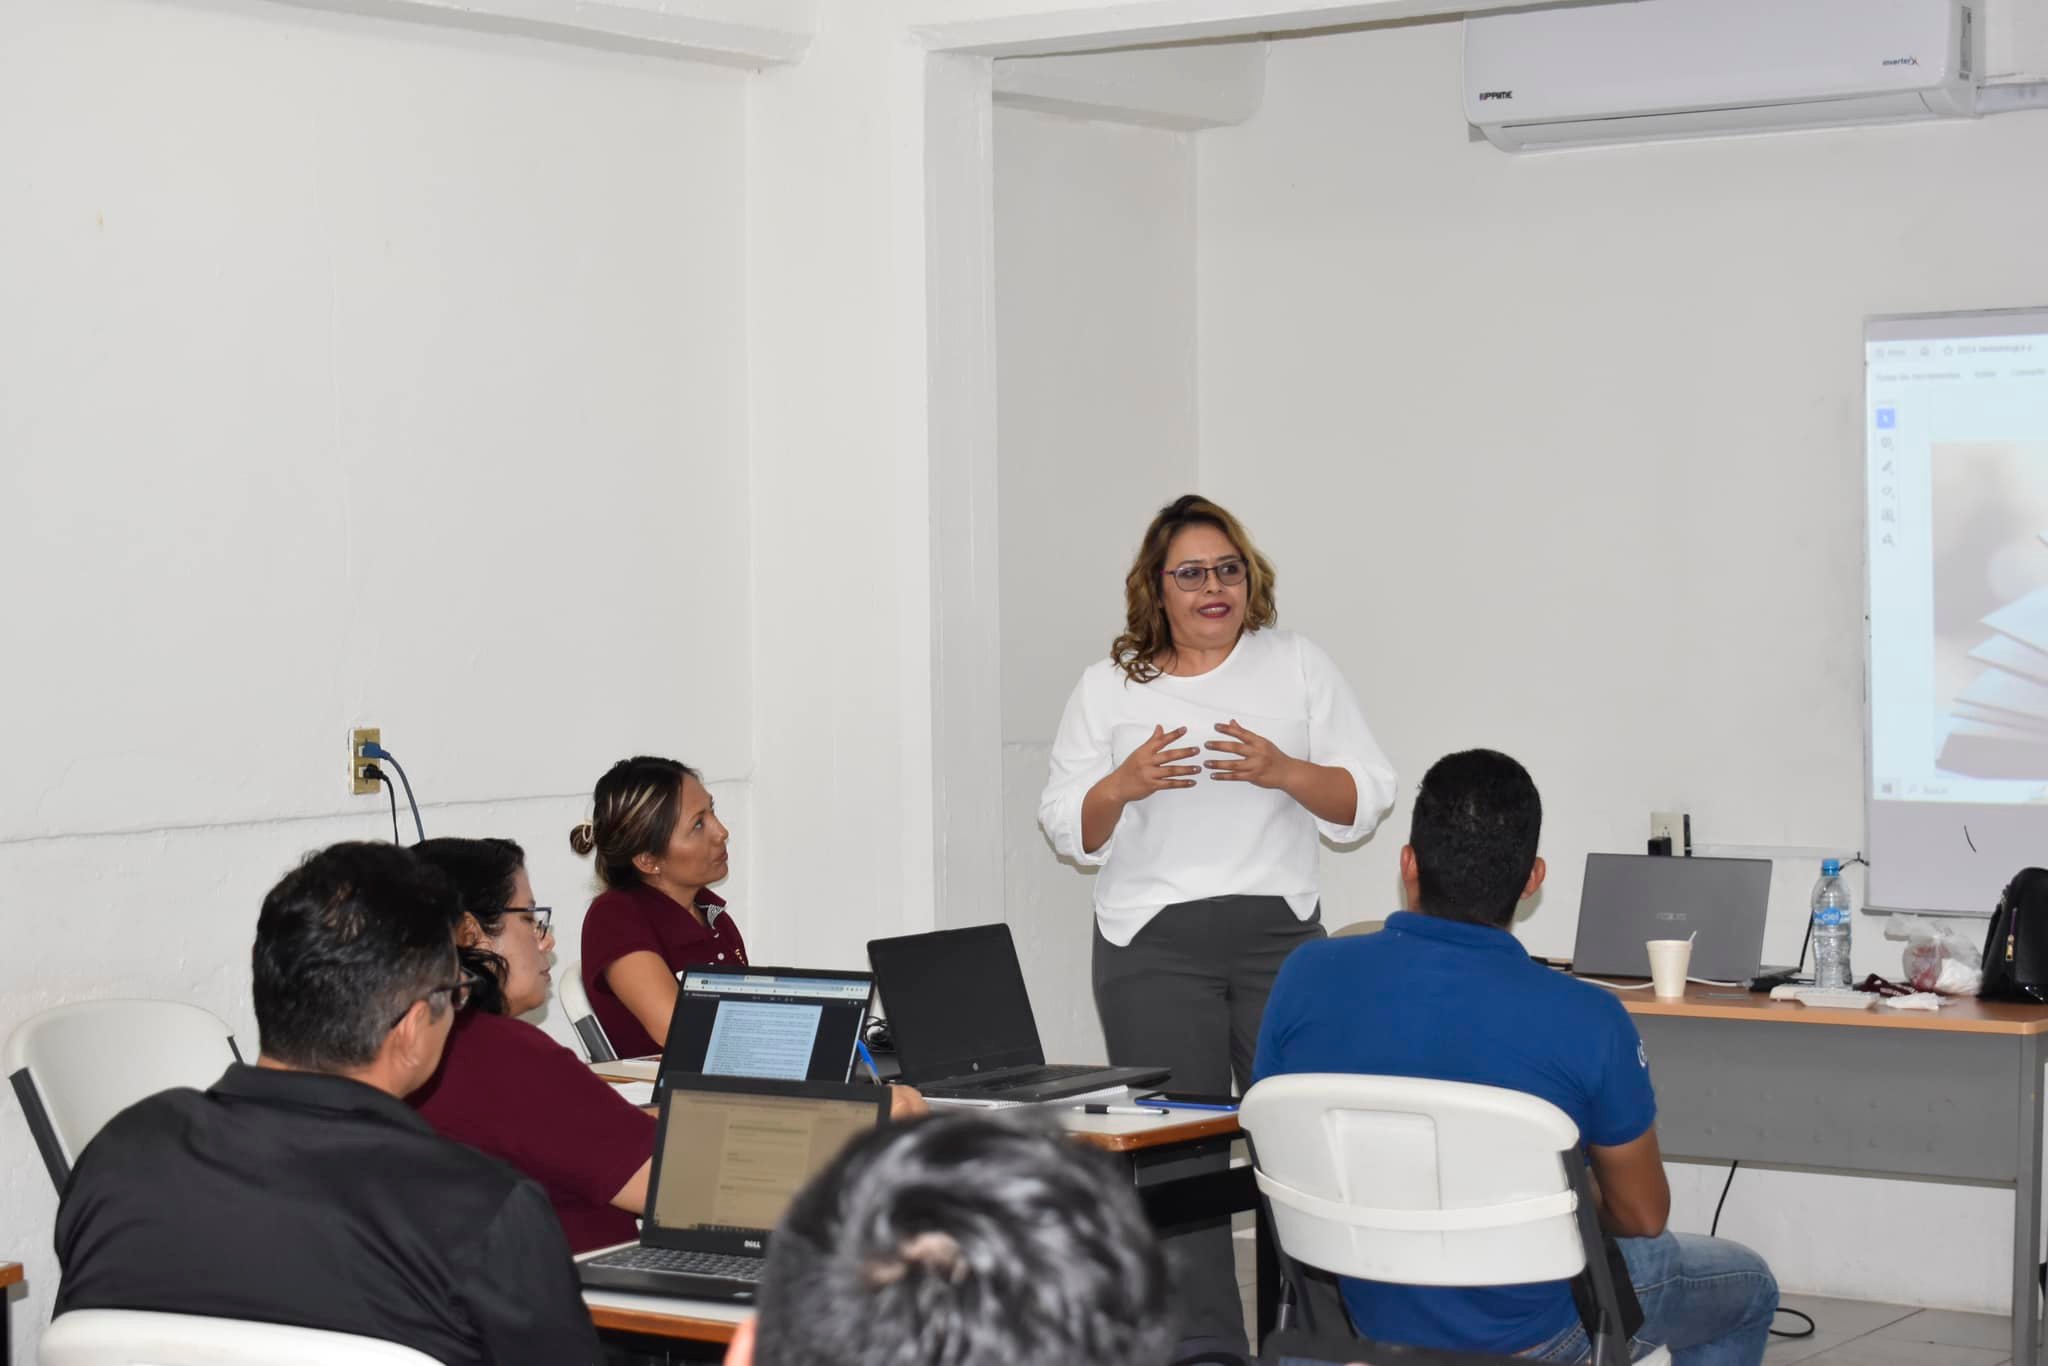 Curso taller: Metodología para la didáctica basada en proyectos, por Mtra. Graciela Santos Morales.